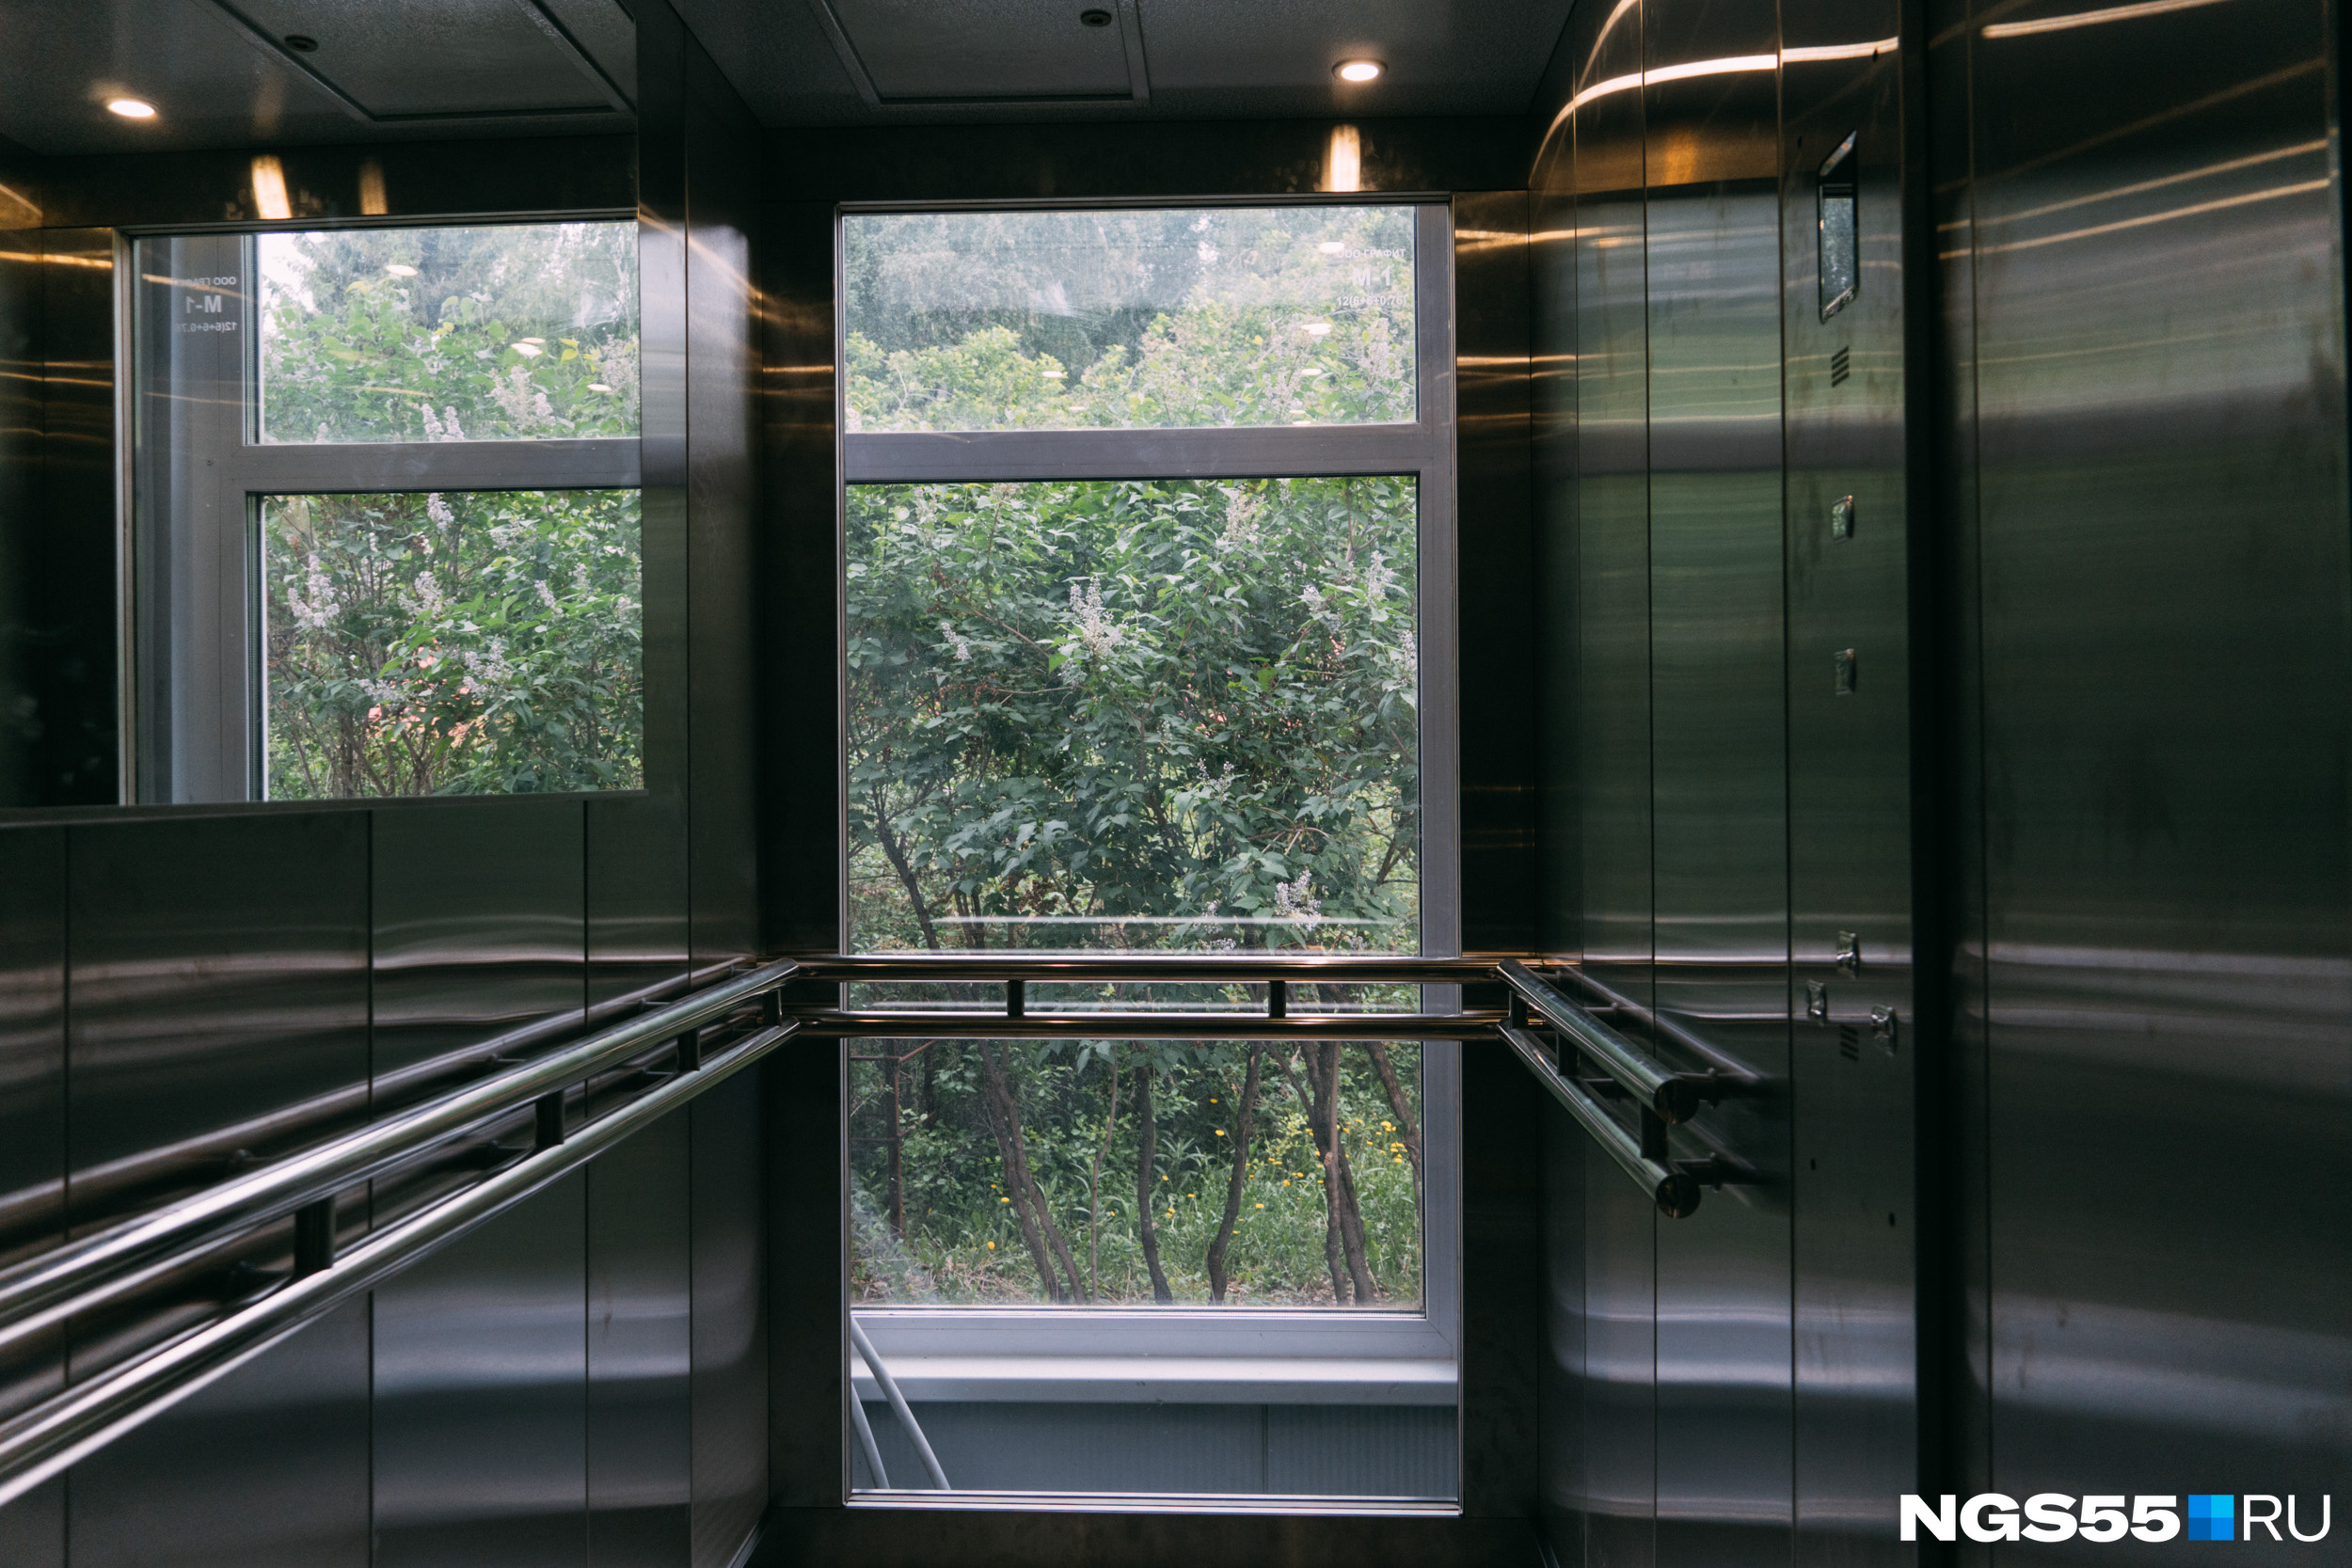 Панорамный лифт, как в кино: пока едешь на нем, можно любоваться лесом